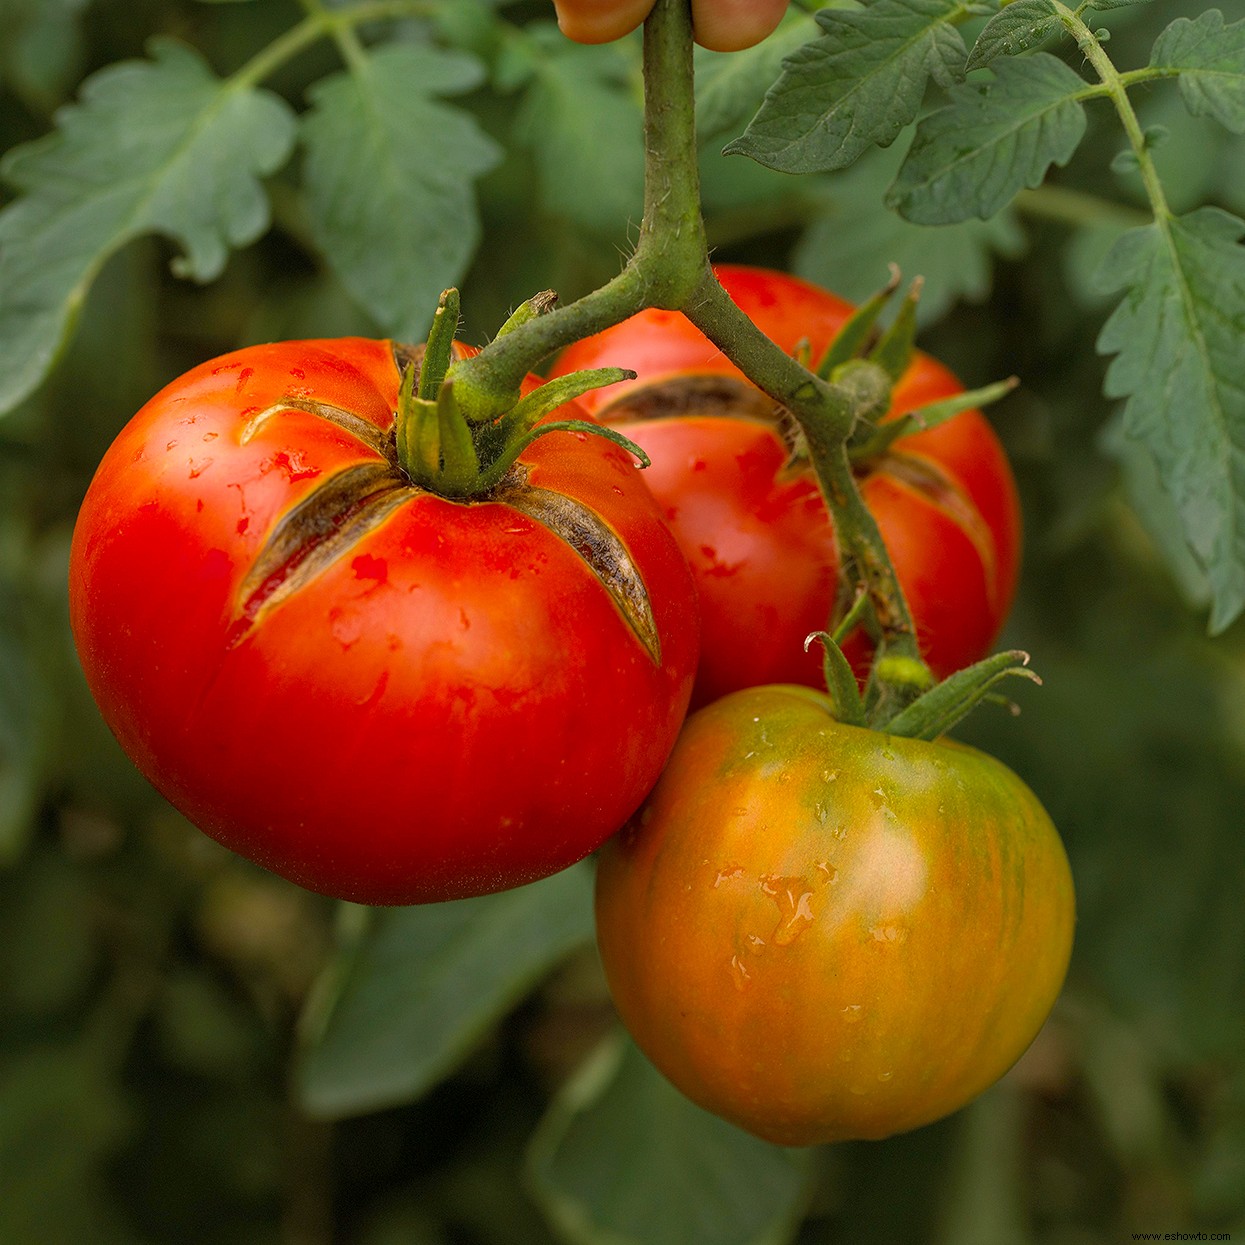 10 enfermedades comunes de las plantas de tomate a tener en cuenta 